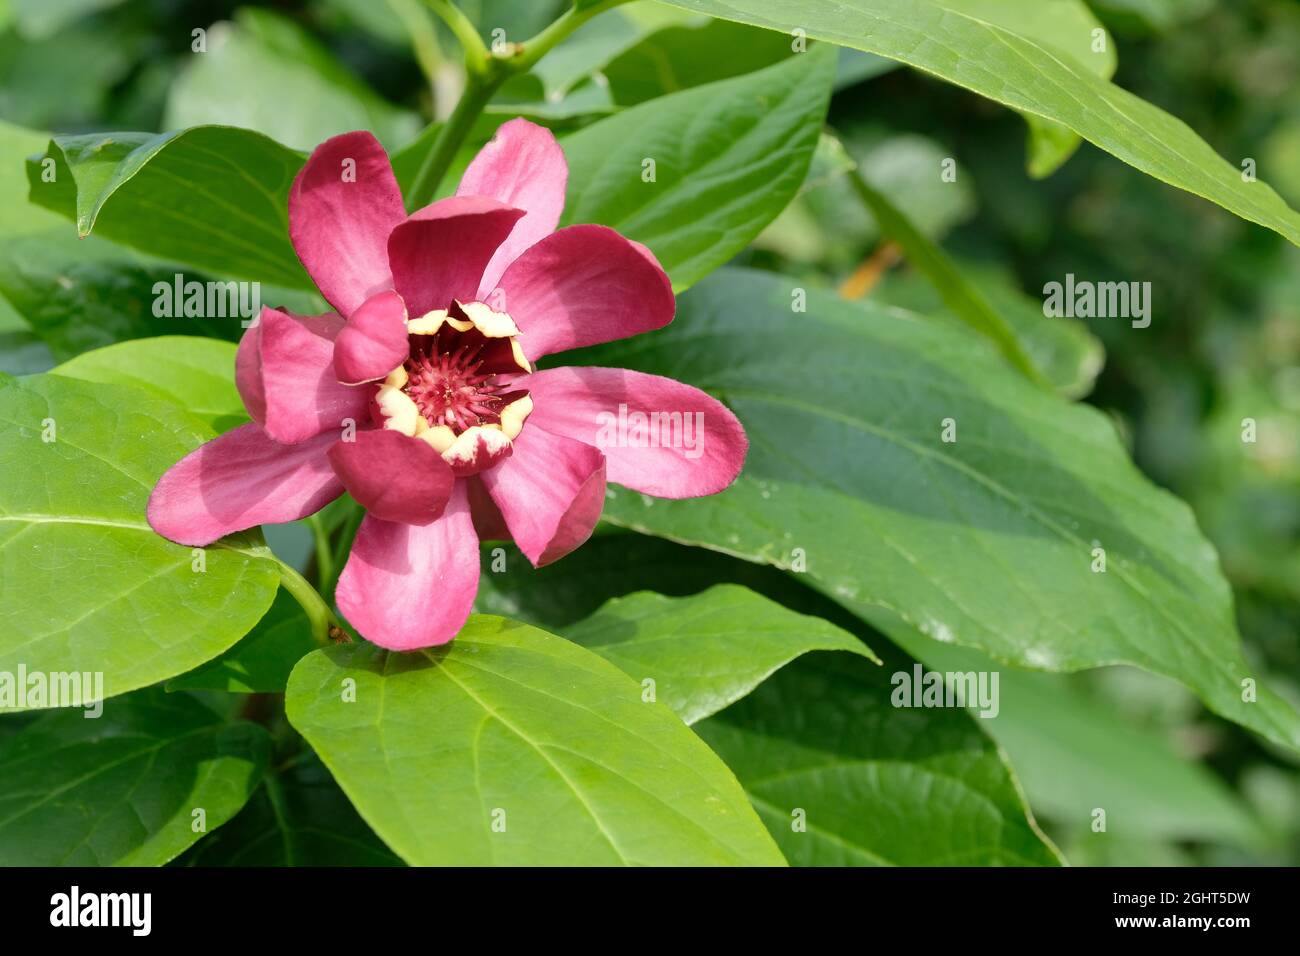 Dunkelrote duftende Blüten mit cremefarbener Spitze. Calycanthus aphrodite. Sweetstrauch. Sinlge Blüte mit einem grünen Laub Hintergrund Stockfoto